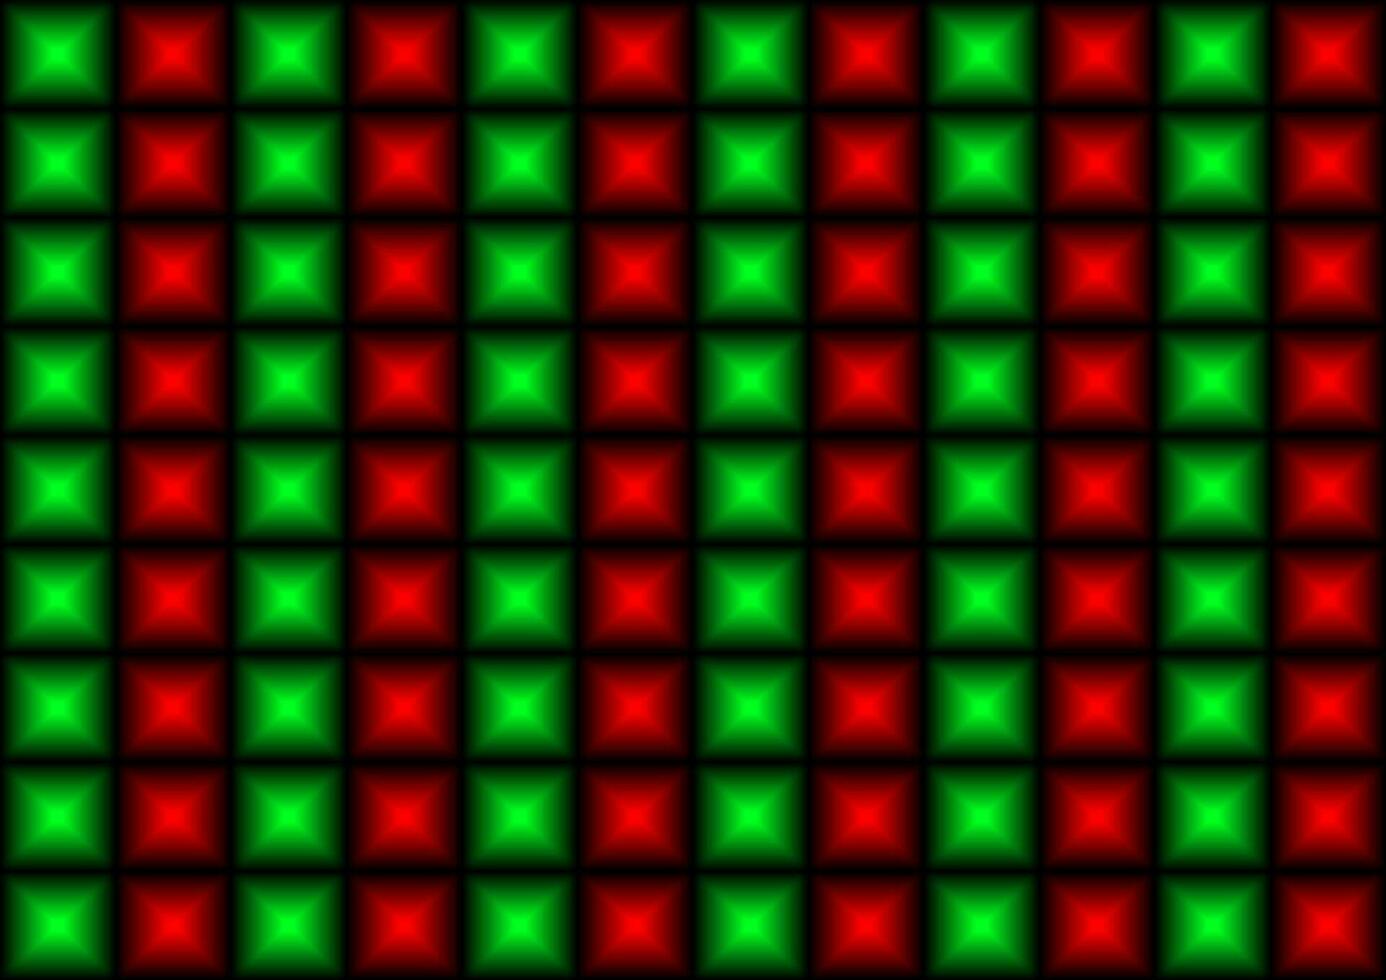 röd och grön jul lampor bakgrund vektor